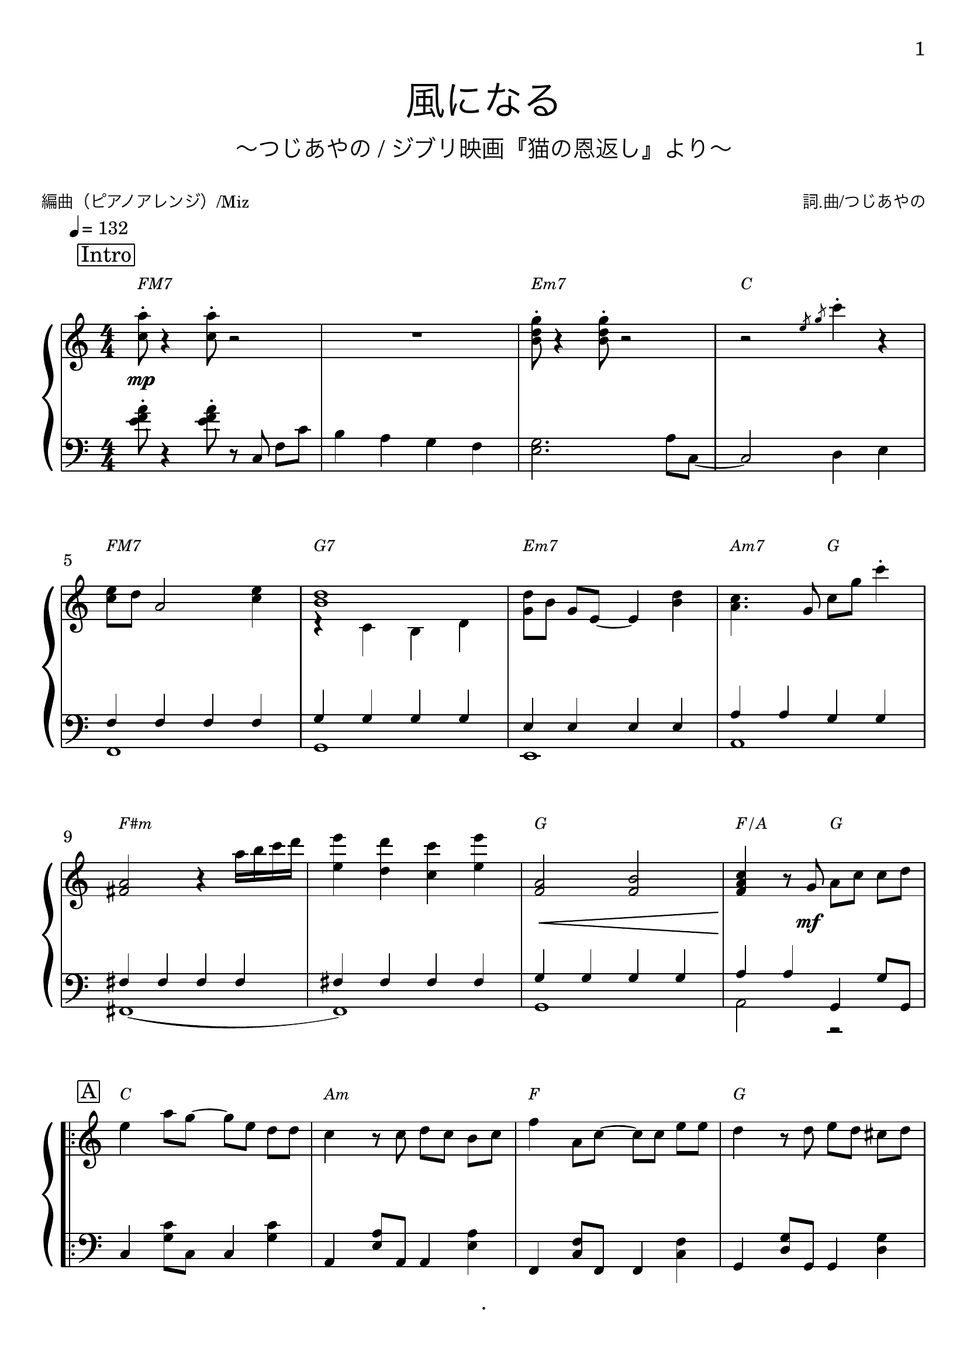 つじあやの - 風になる/ジブリ「猫の恩返し」主題歌 (ピアノソロ) by Miz